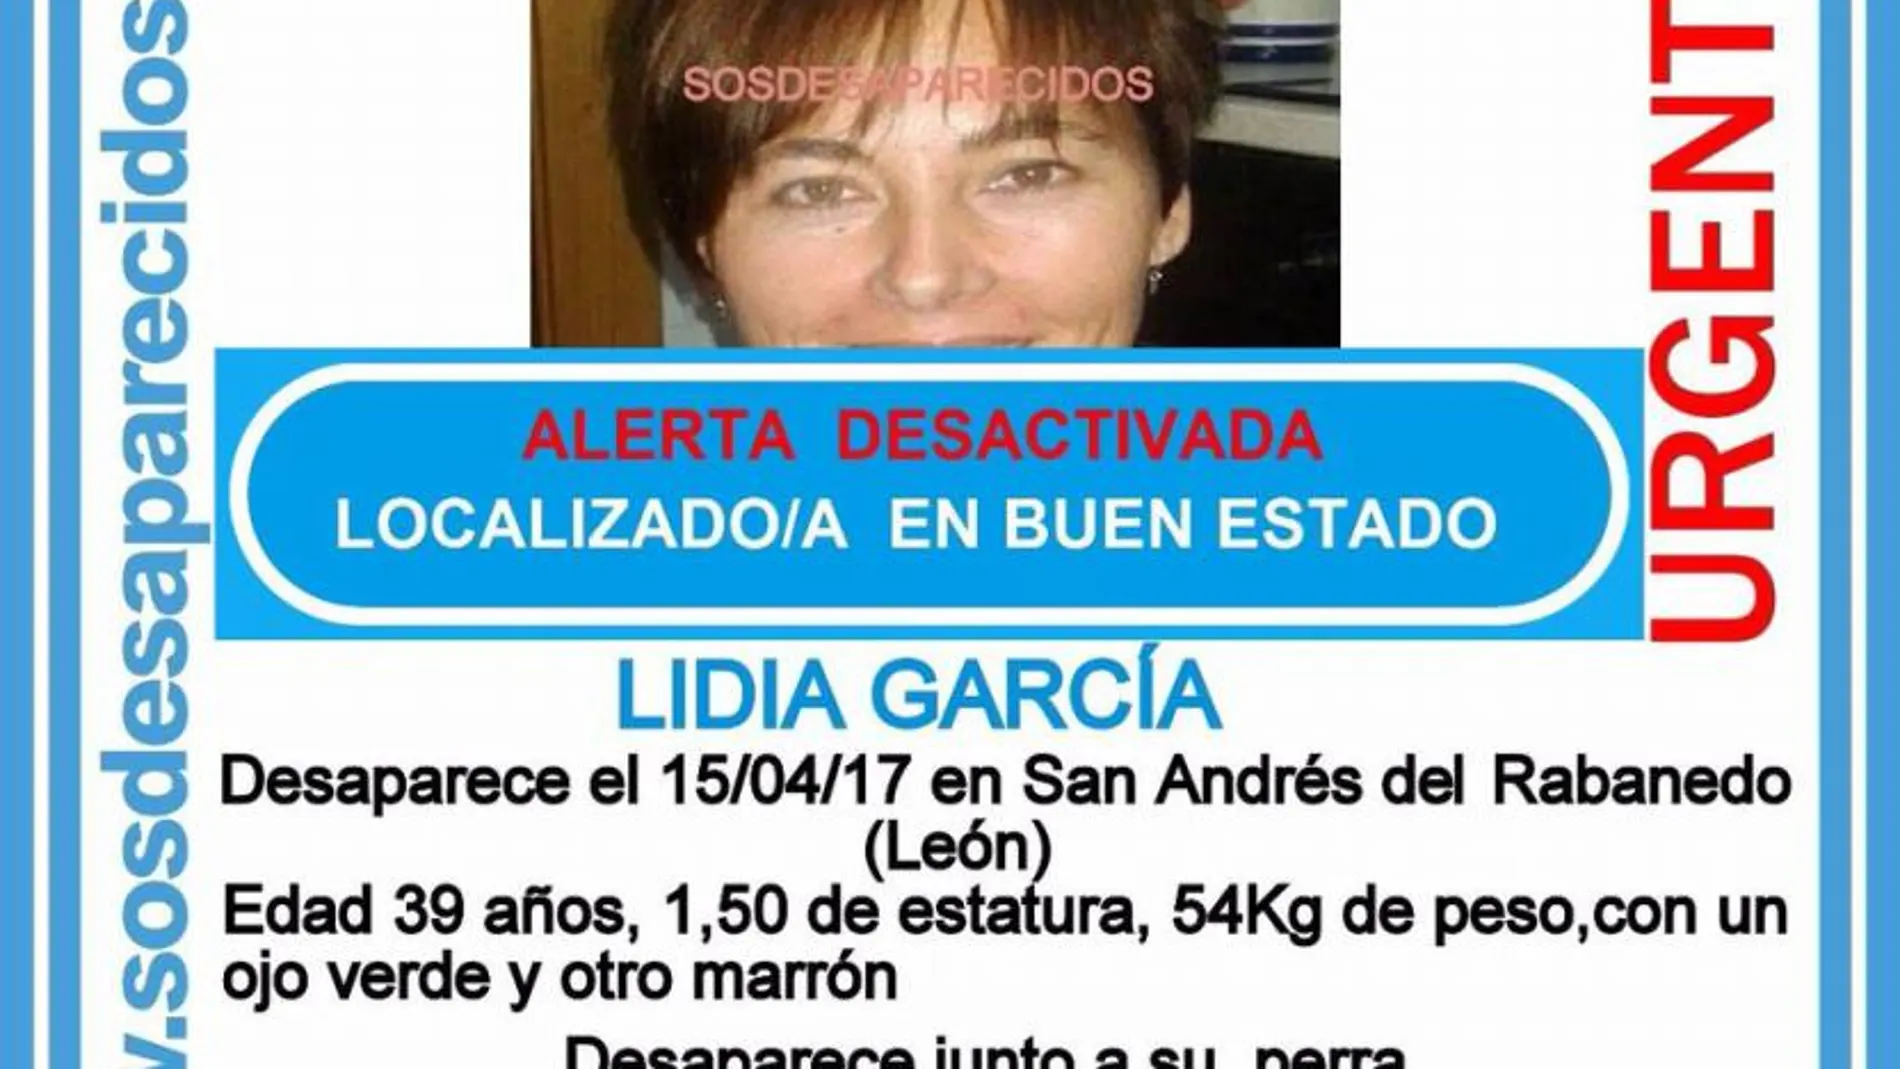 Localizada en buen estado la mujer desaparecida en San Andrés (León)